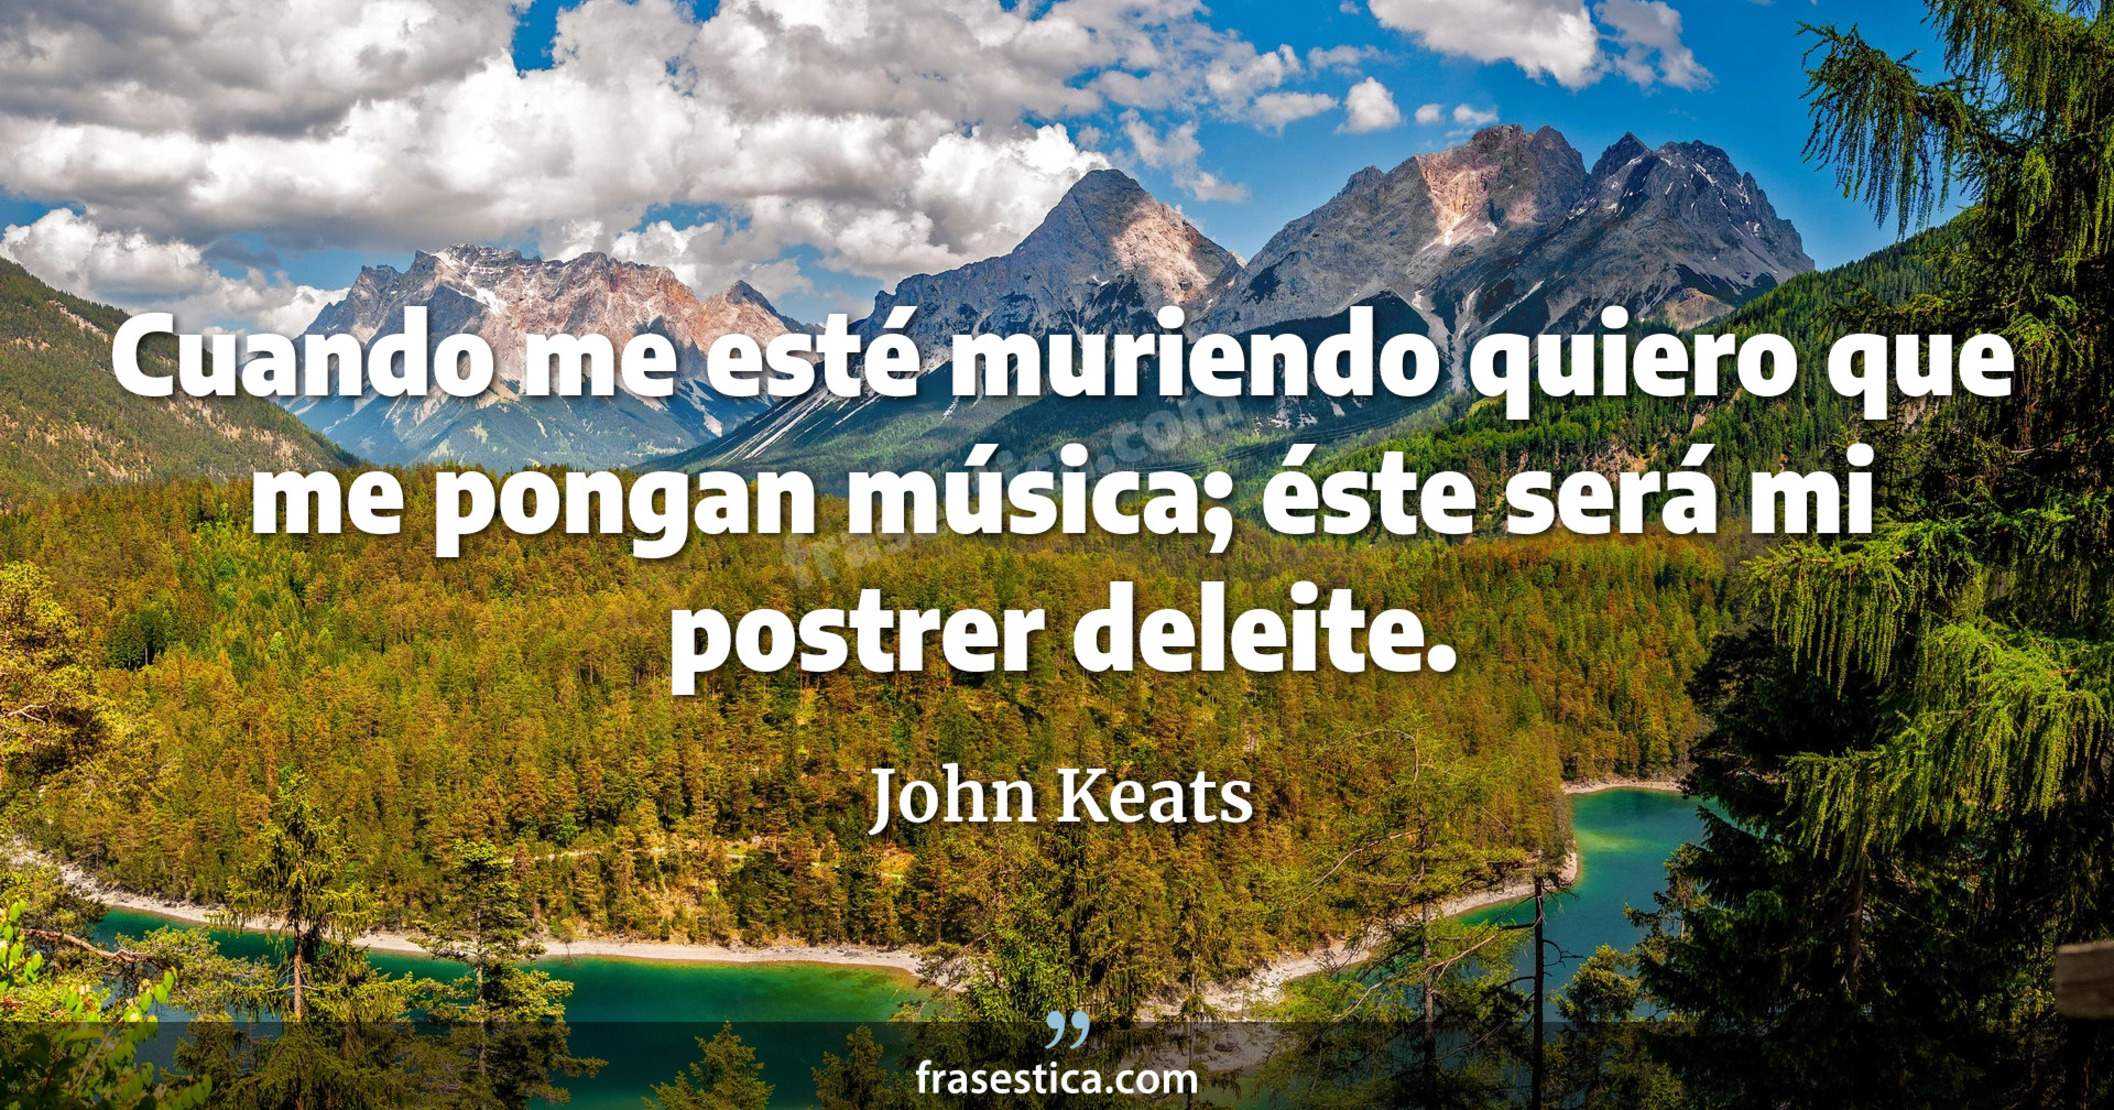 Cuando me esté muriendo quiero que me pongan música; éste será mi postrer deleite. - John Keats